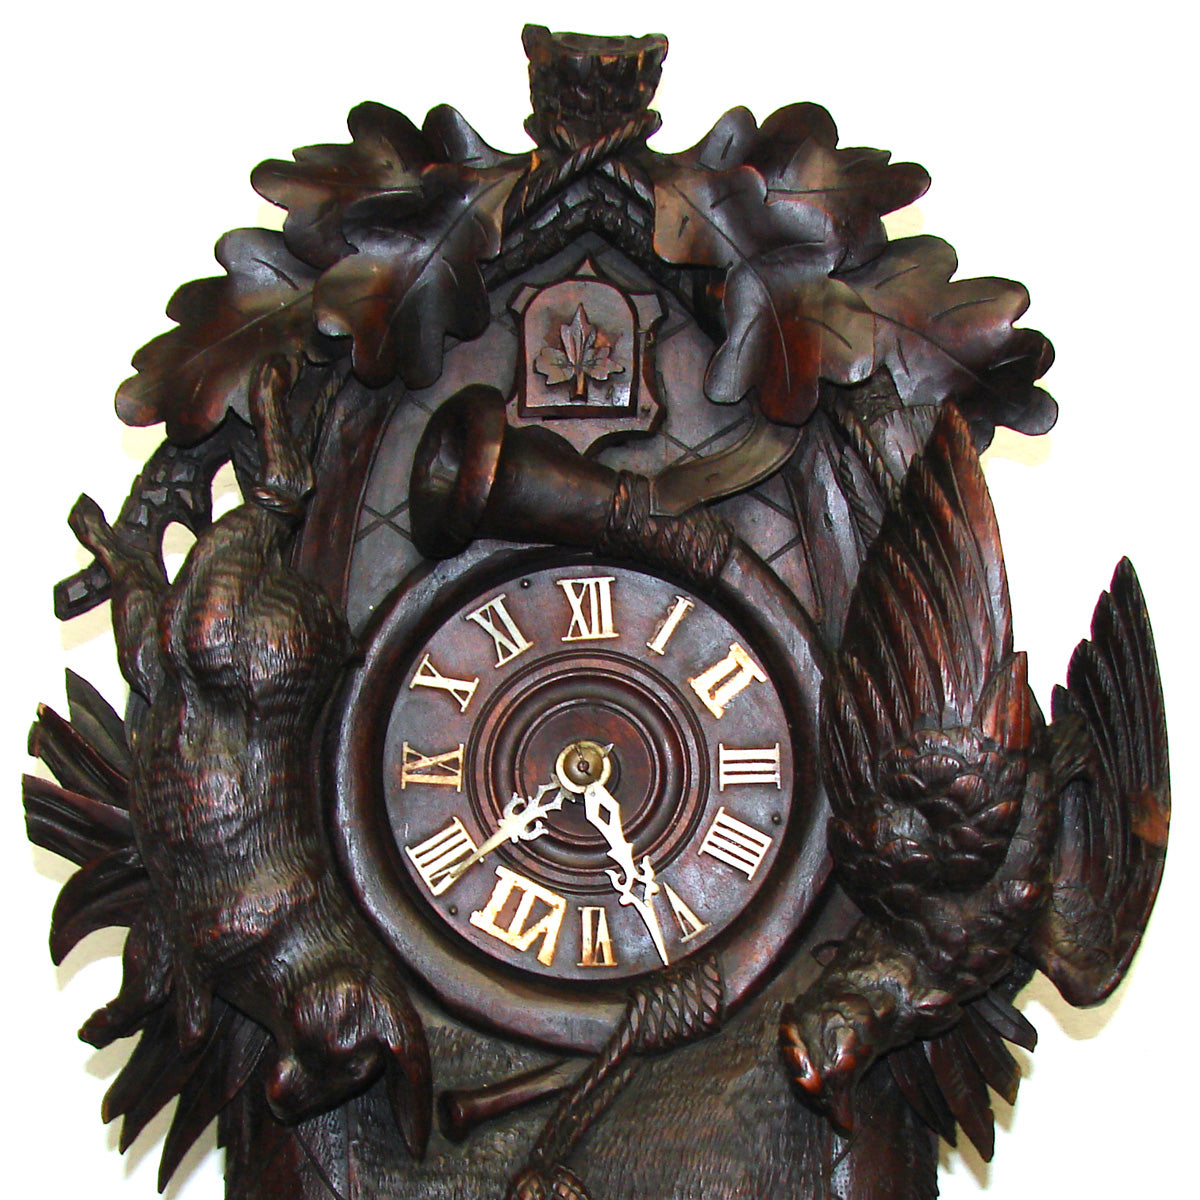 Antique Victorian Era Black Forest Carved 16.5" Cuckoo Clock, Ed. Schirrmann Maker